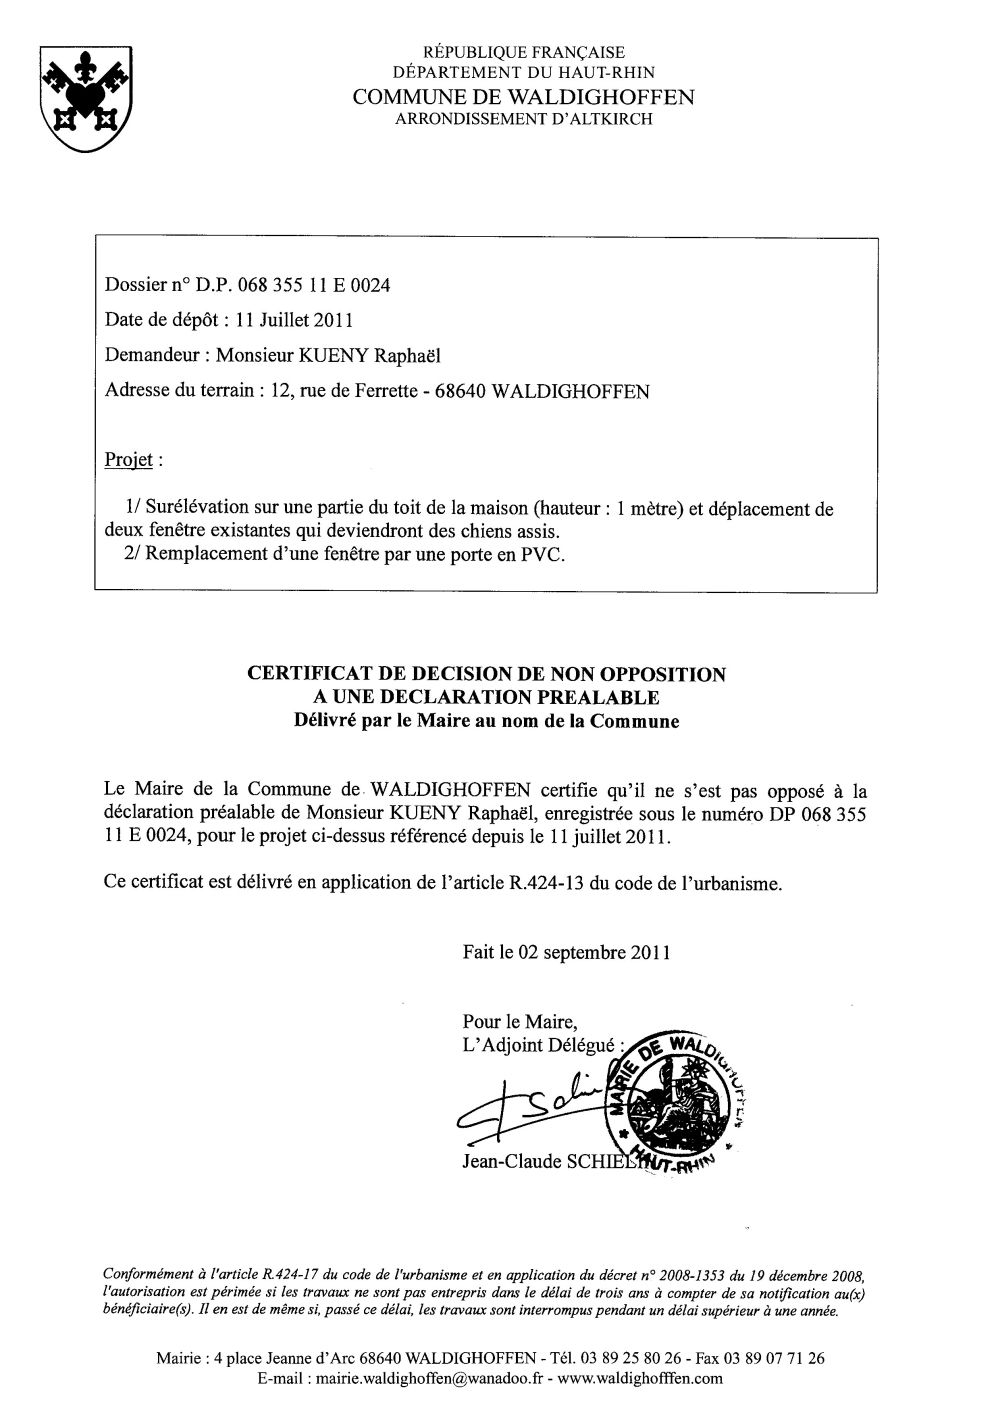 Non-opposition à la déclaration préalable n°11E0024 - M. KUENY